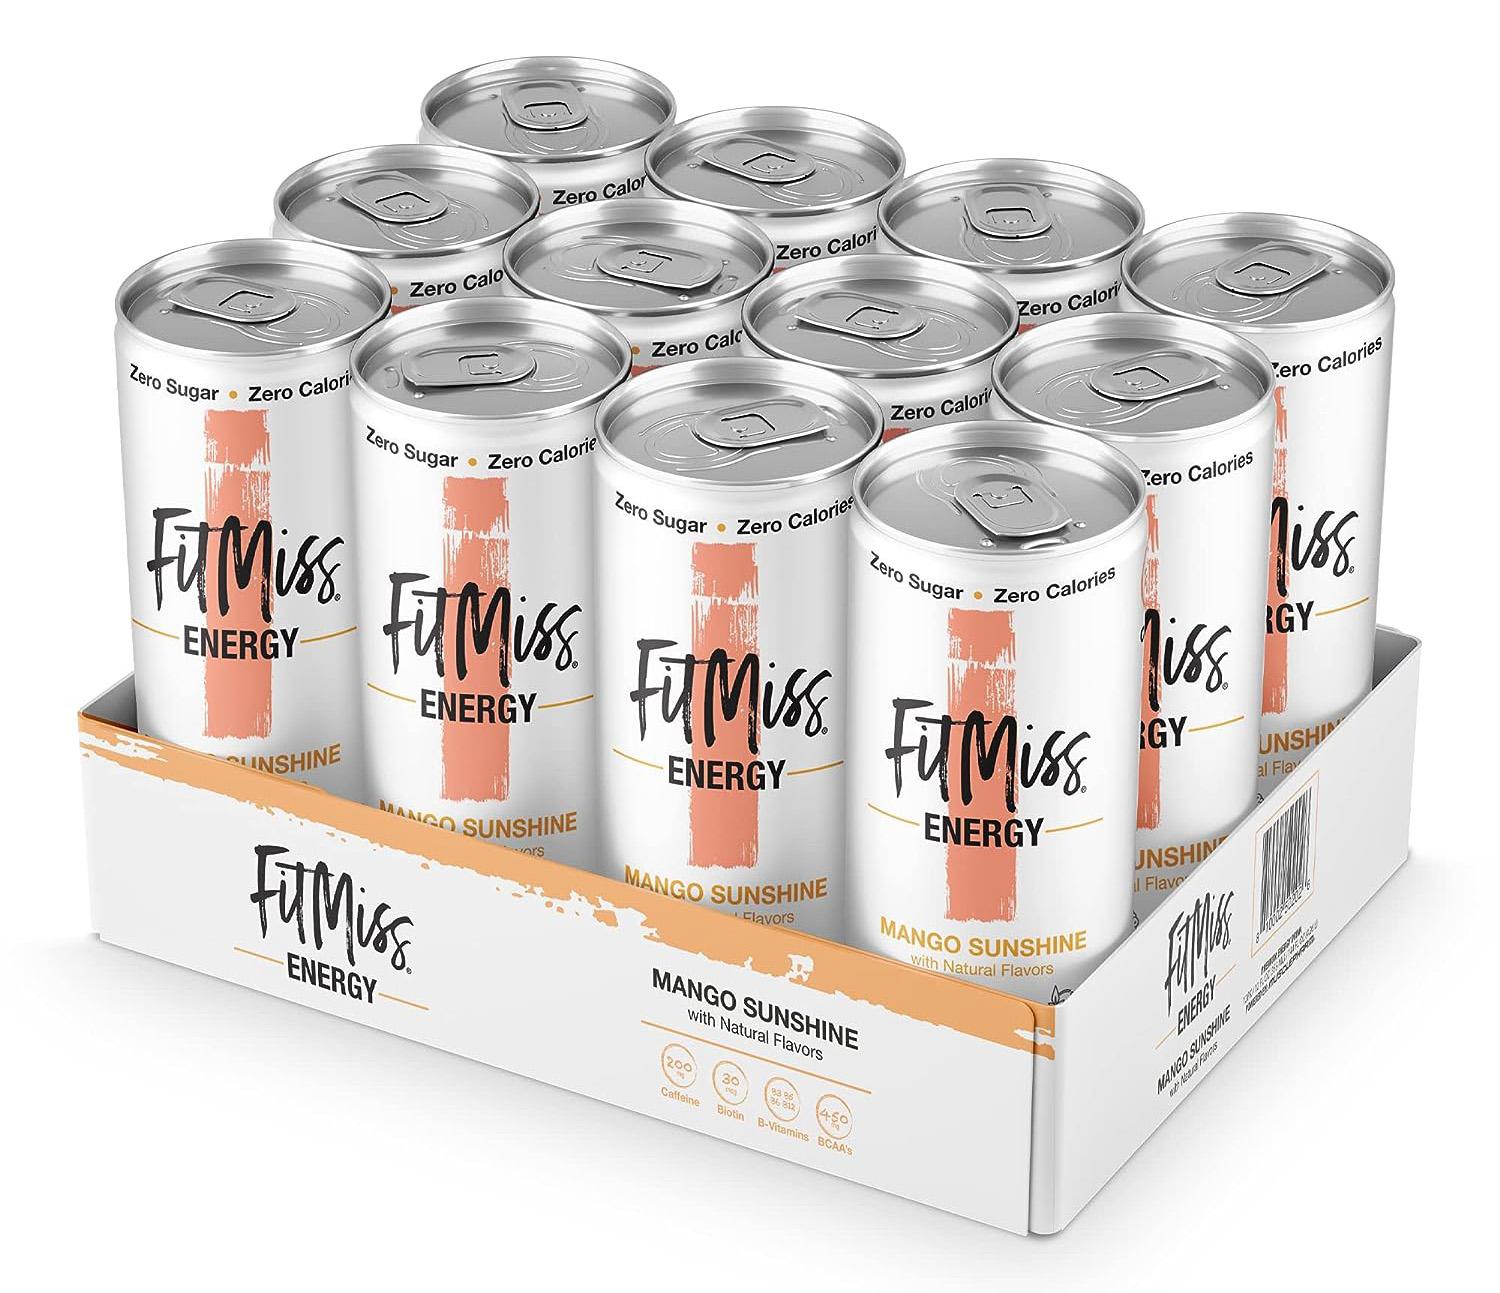 MusclePharm FitMiss Mango Sunshine Energy Drinks 12 Pack for $9.63